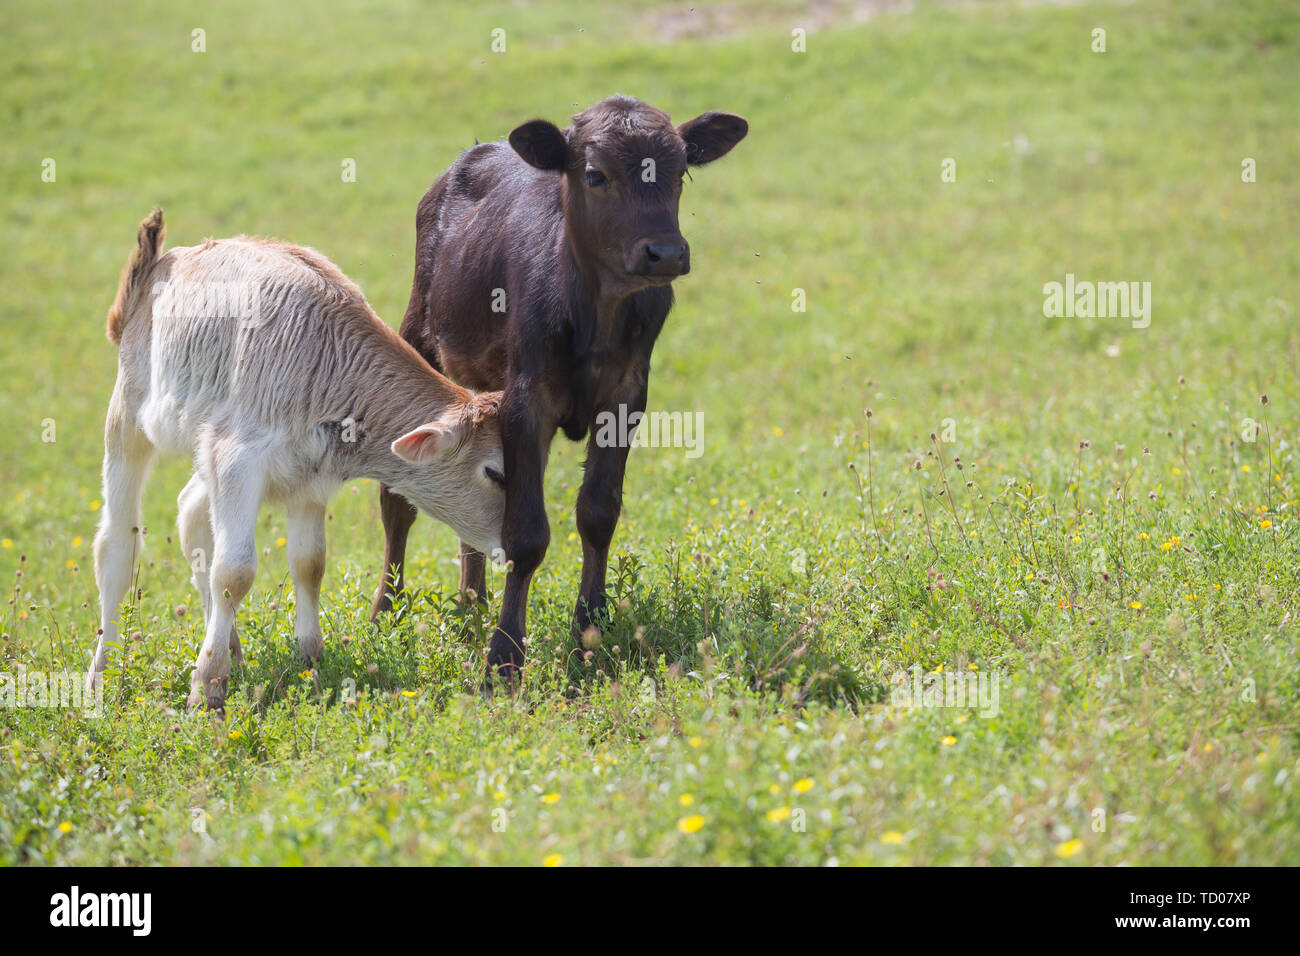 Close-up de veau en champ vert allumé par sun avec de l'herbe d'été vert sur fond flou. L'élevage du bétail, l'élevage, la production de lait et de viande Banque D'Images